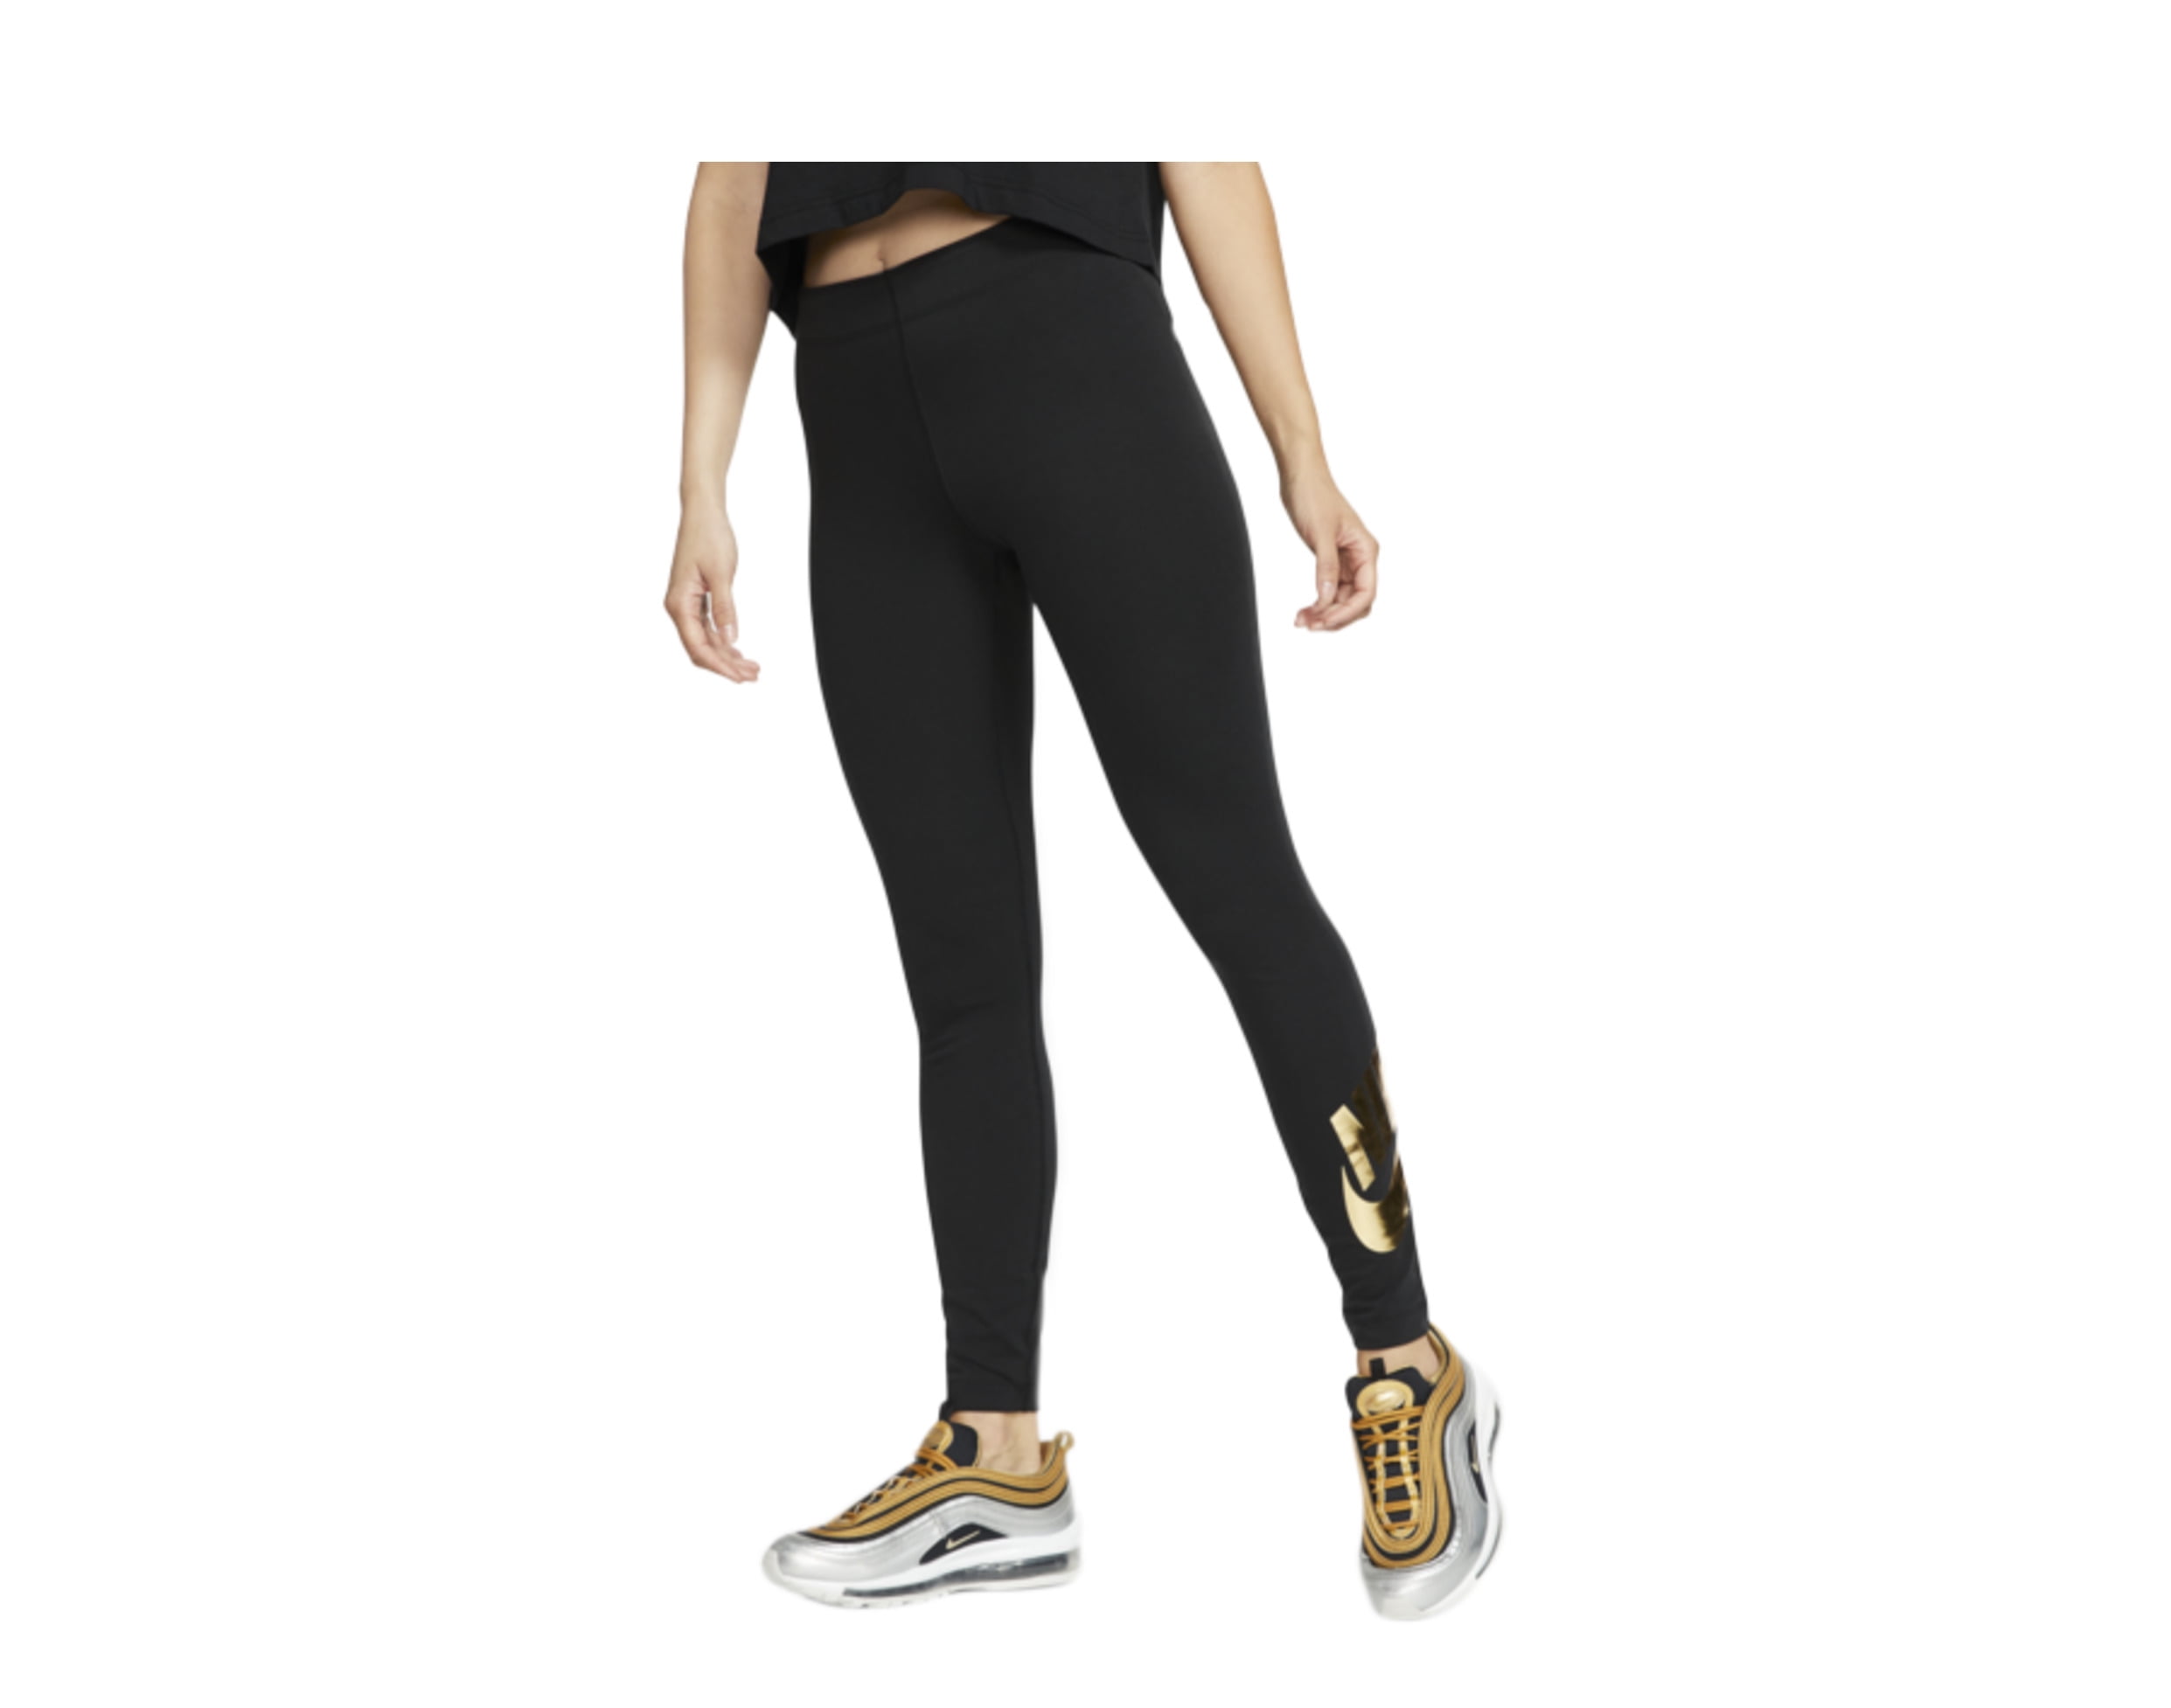 women's black and gold nike leggings